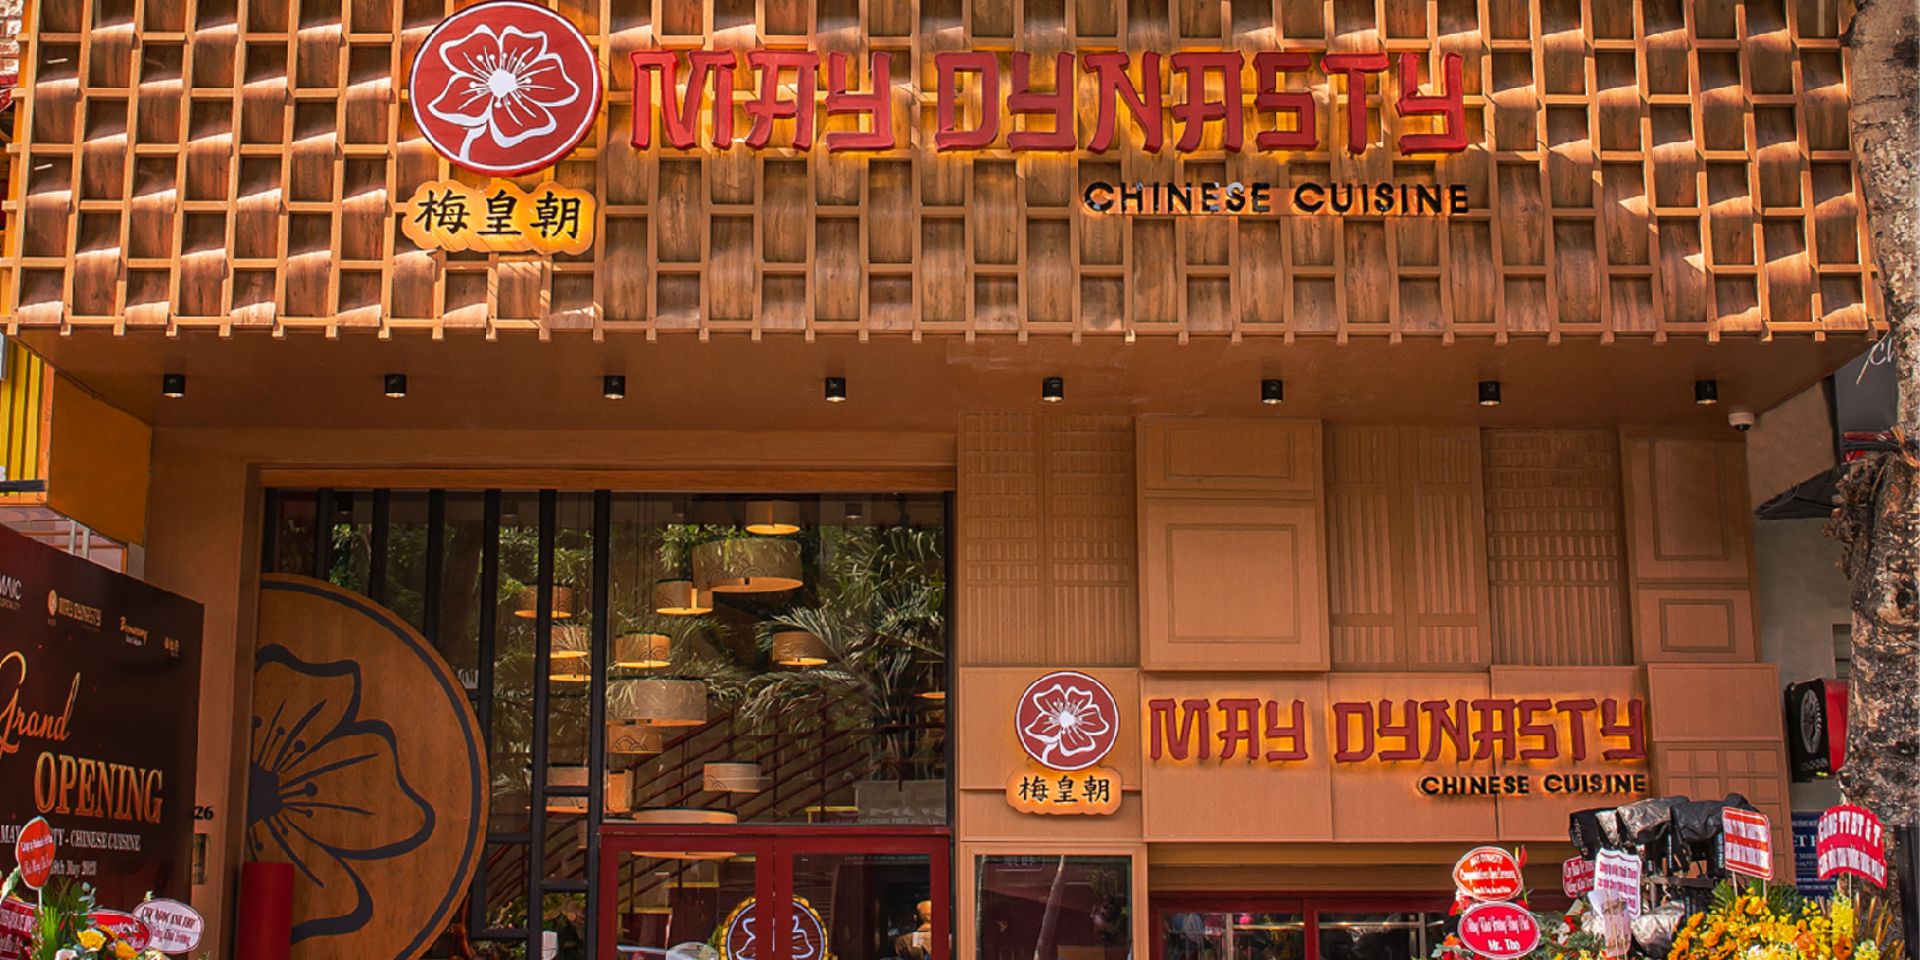 Ý nghĩa của ba tông màu quan trọng: đỏ, vàng và cam trong thiết kế nhà hàng Hoa